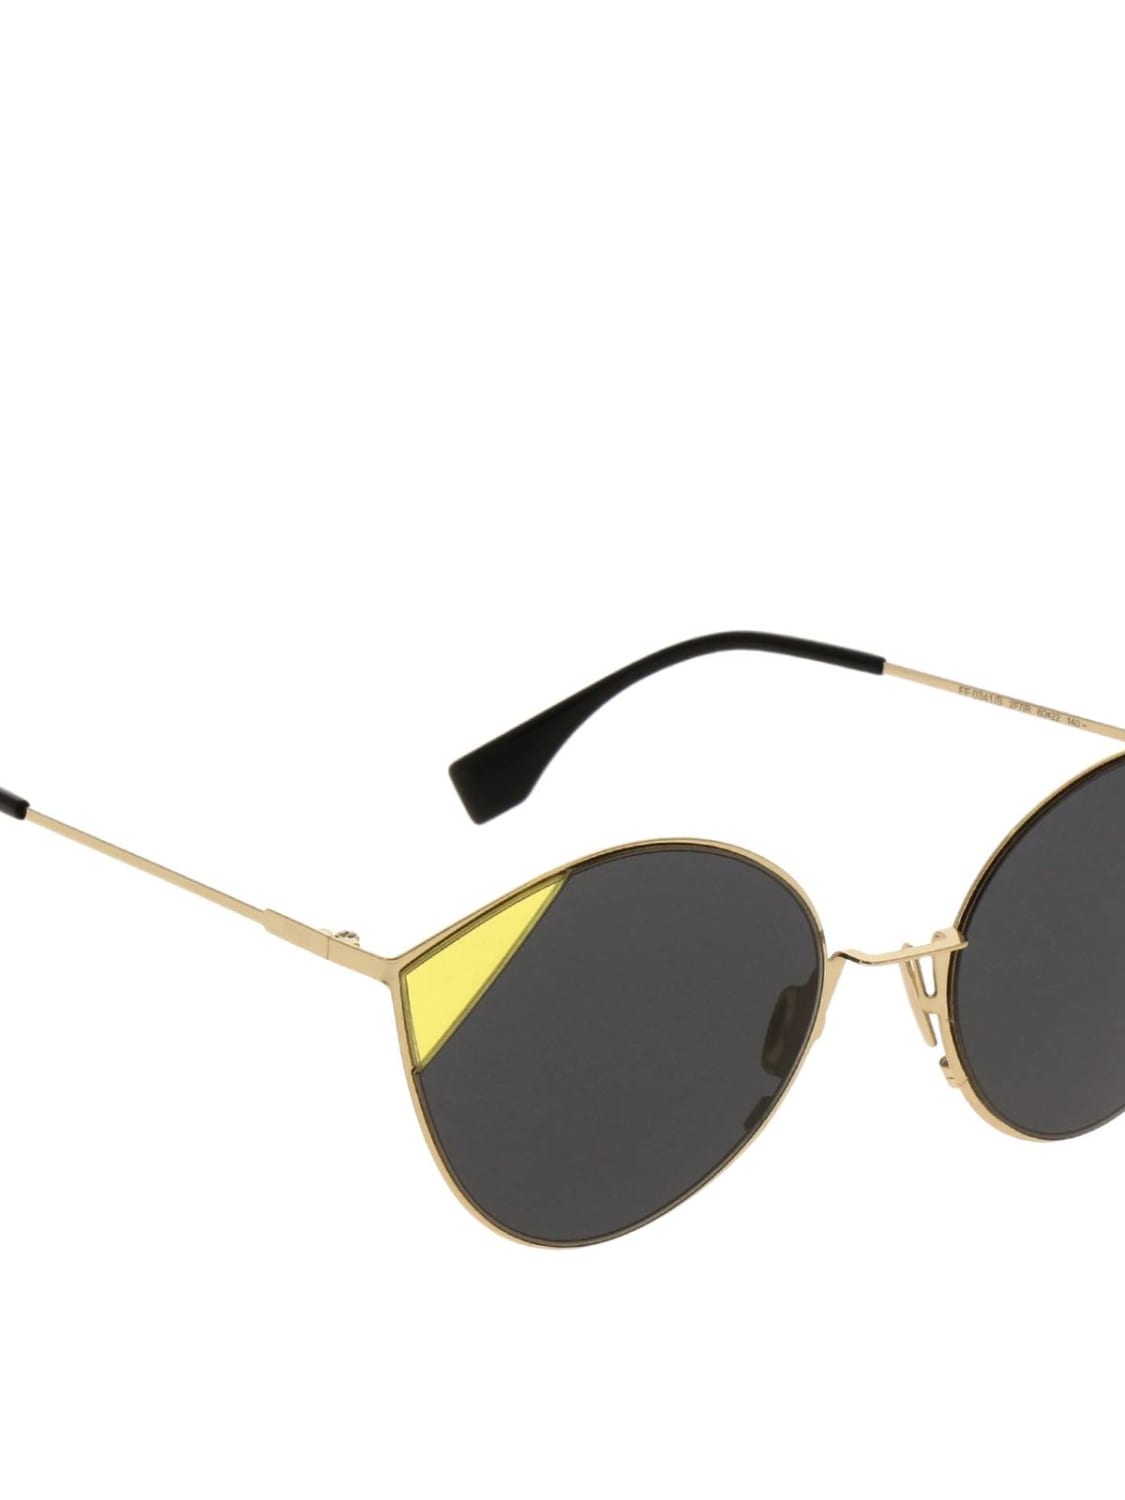 Солнцезащитные очки Fendi: Солнцезащитные очки FF 0341/S Fendi из металла и ацетата черный 2